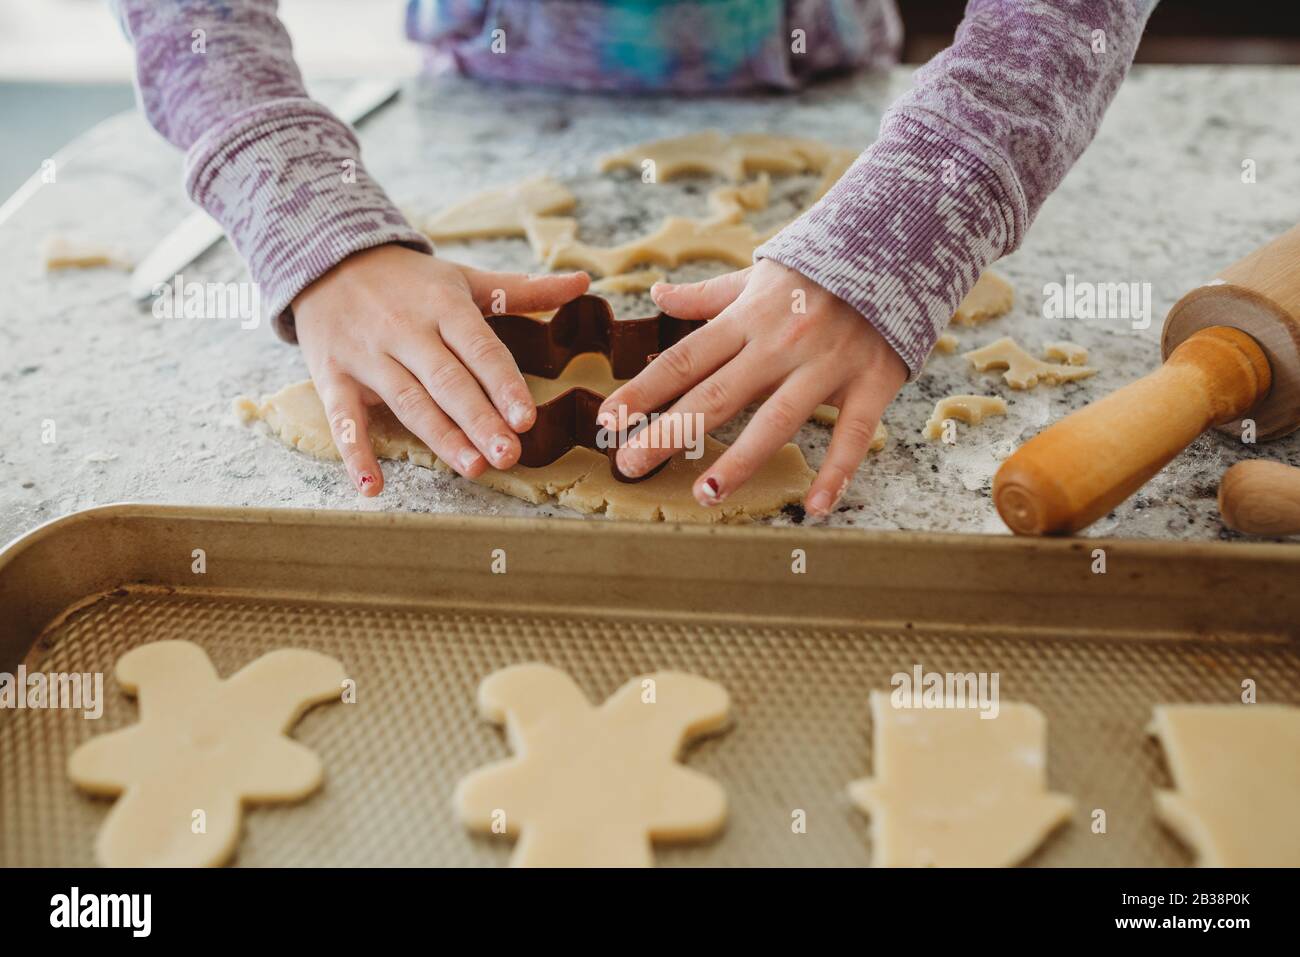 Les mains de jeunes filles utilisent un emporte-pièce sur la pâte à biscuits Banque D'Images